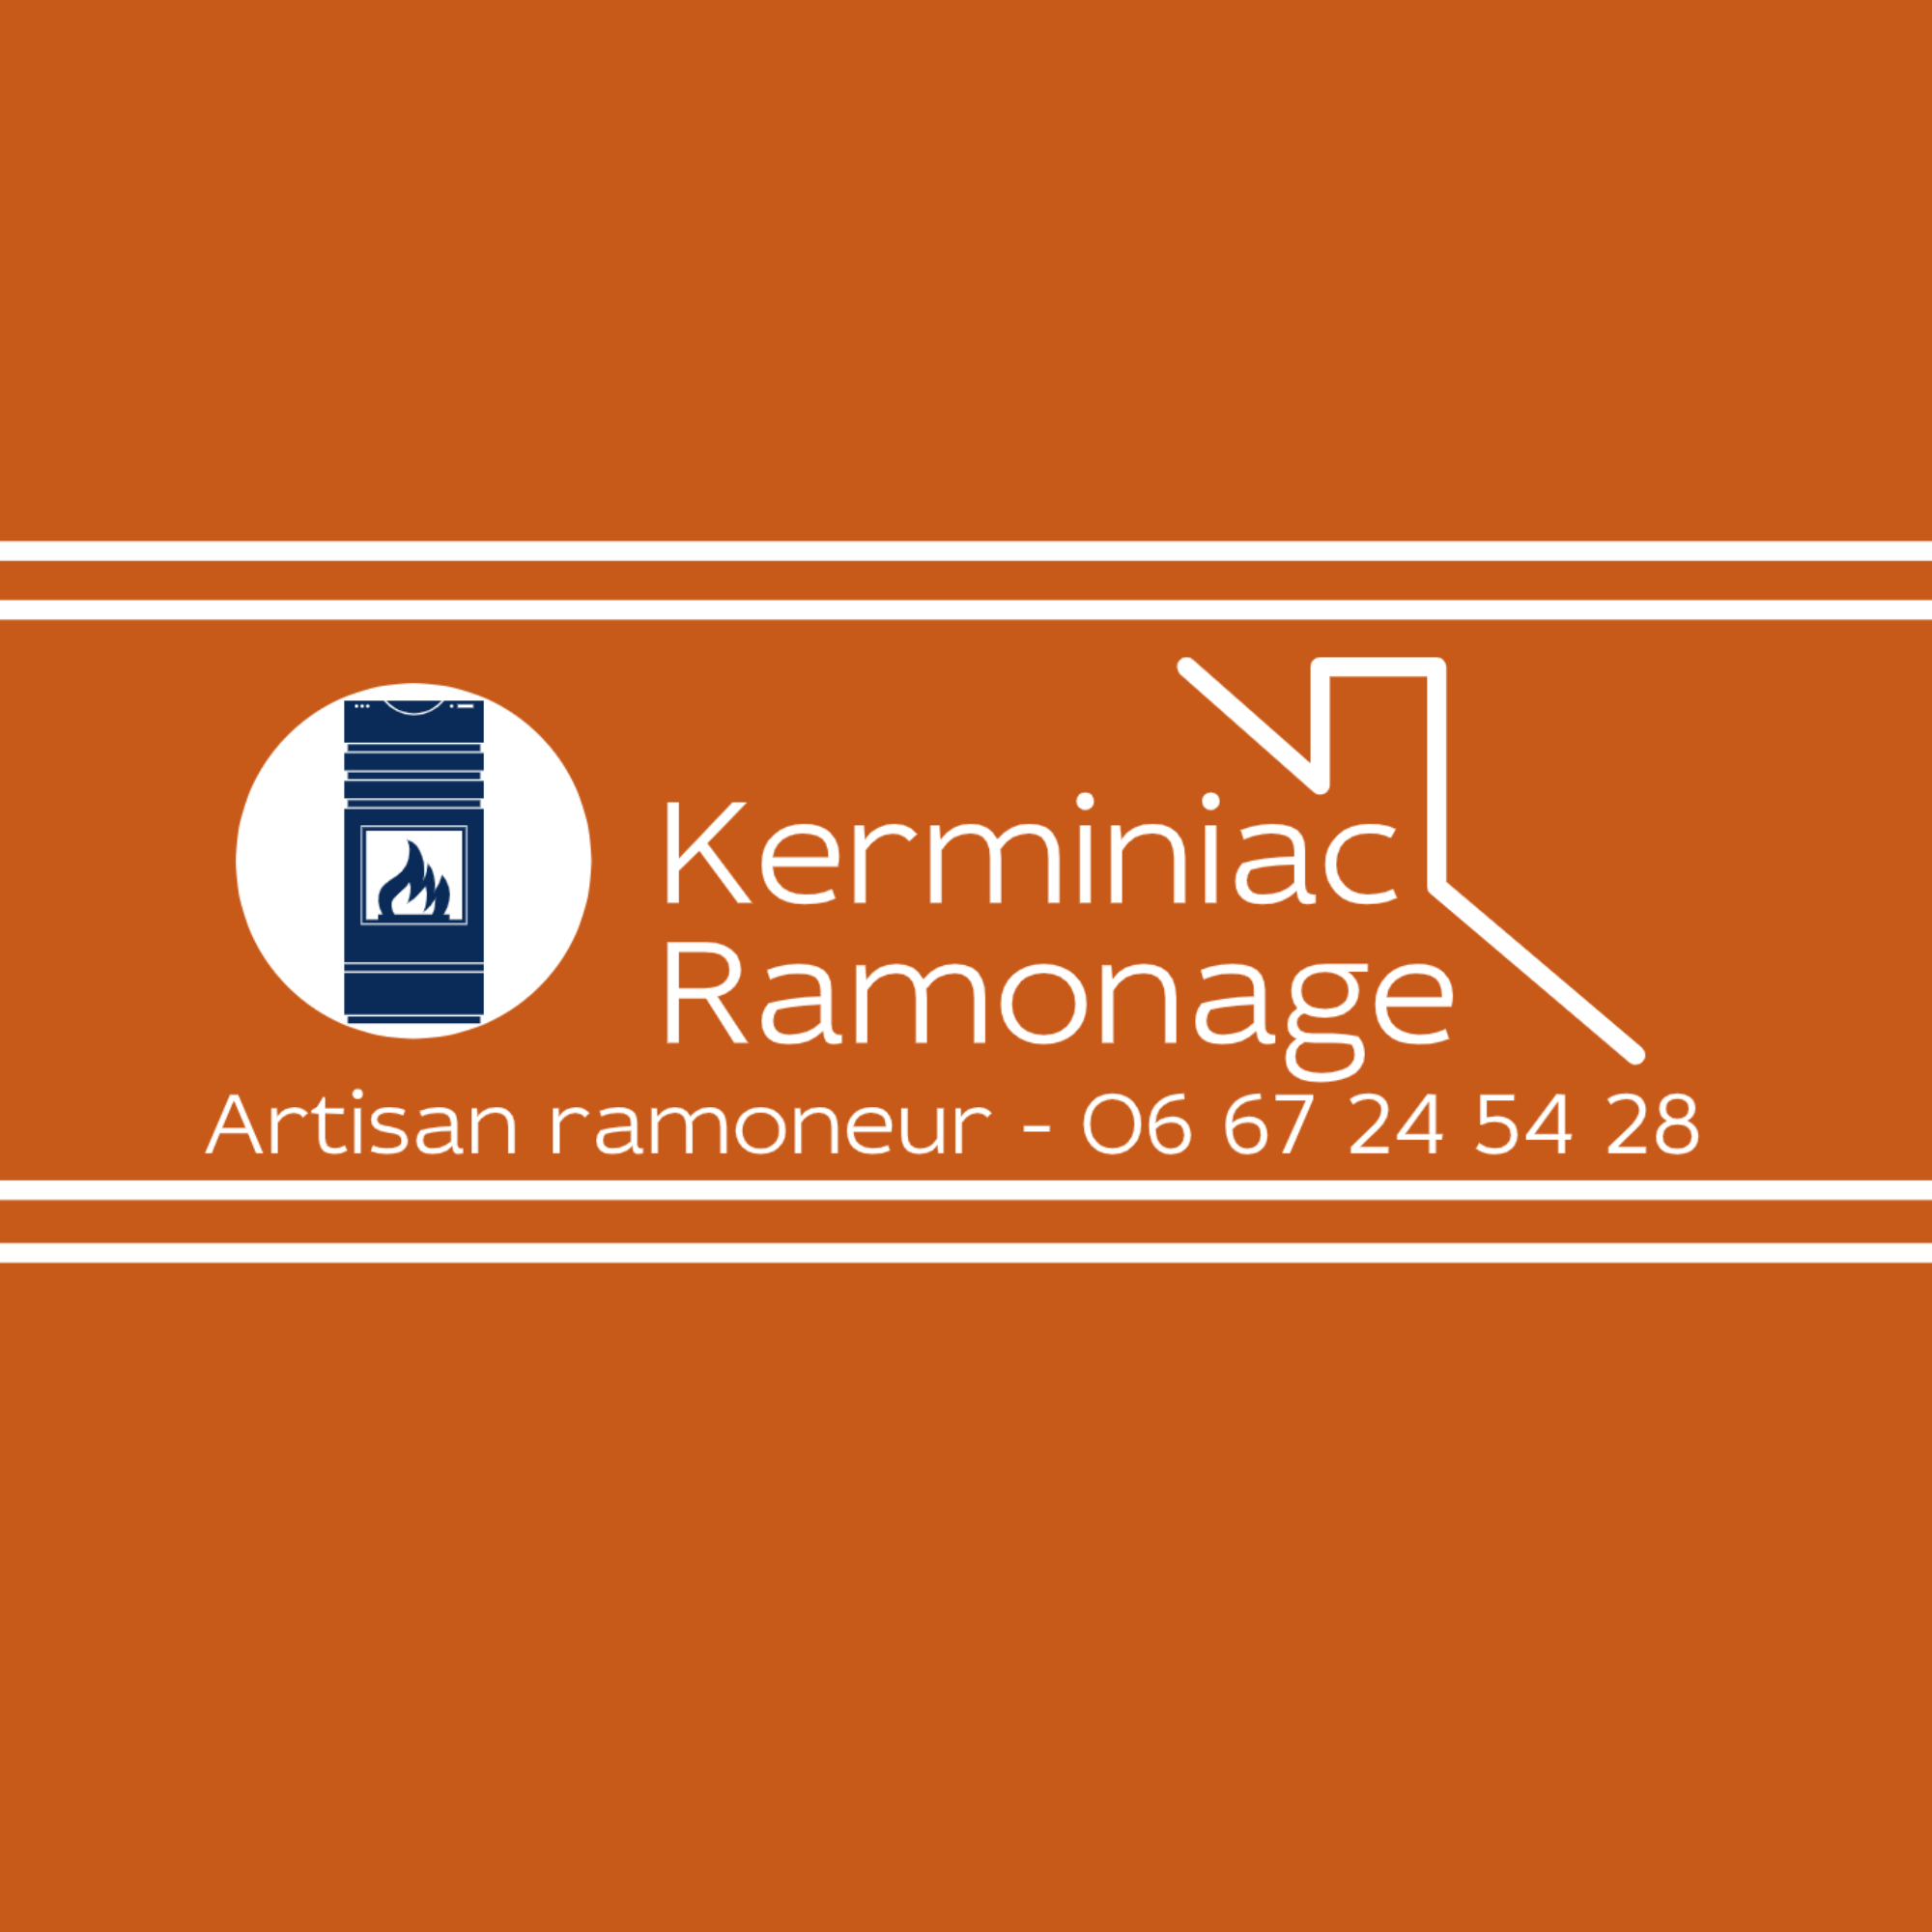 Kerminiac Ramonage